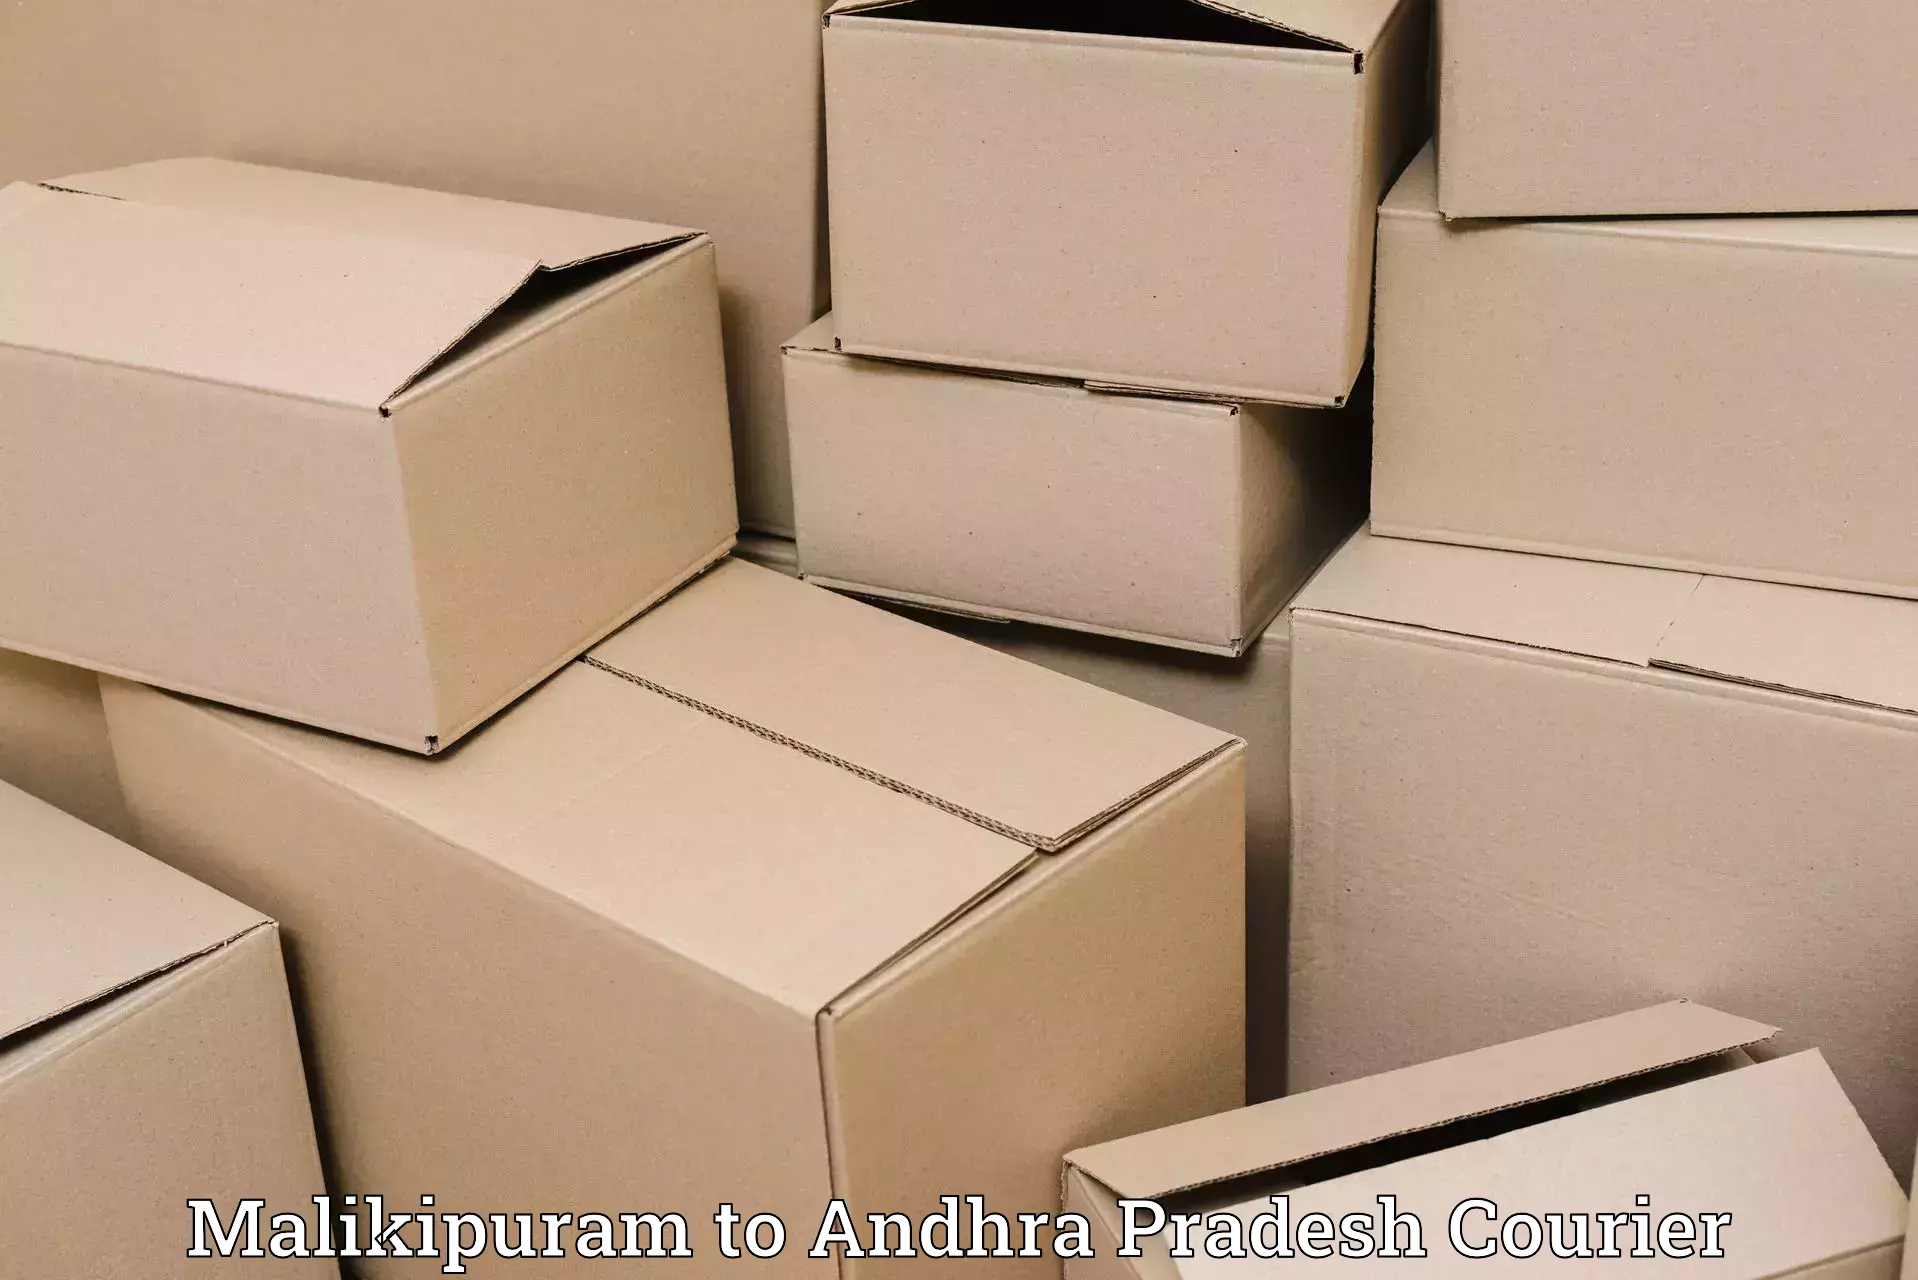 Residential courier service Malikipuram to Pendurthi